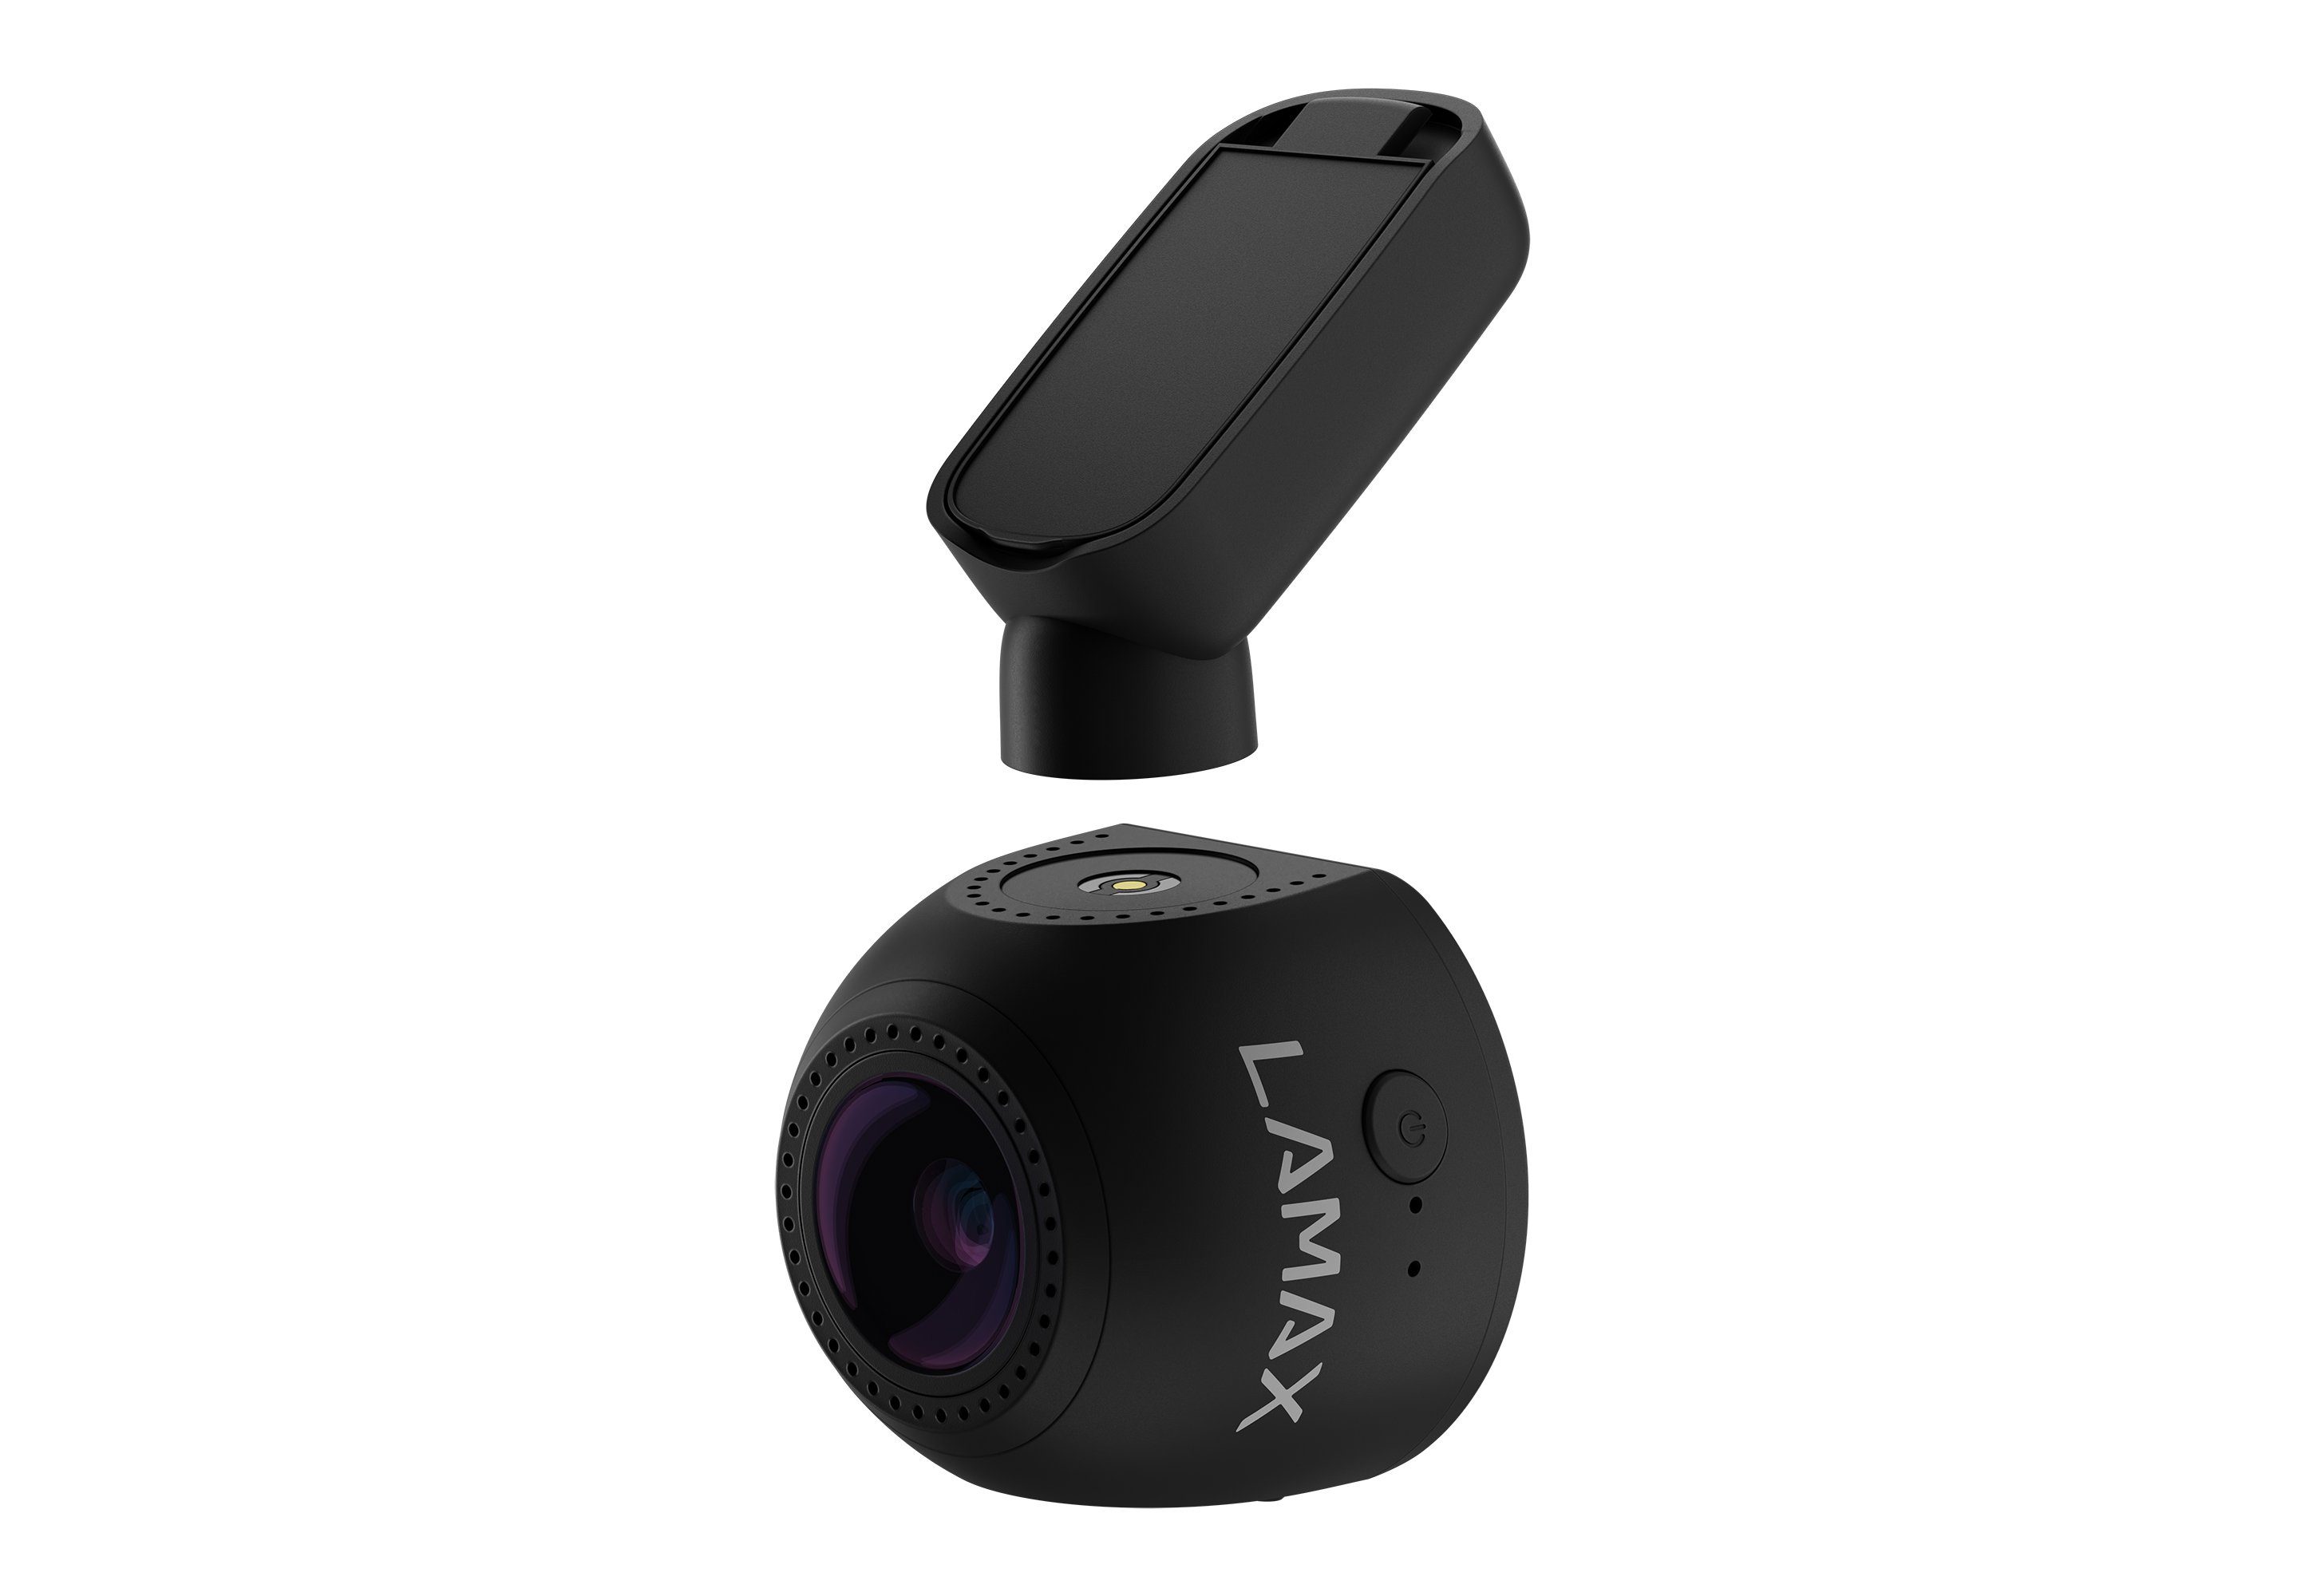 genauer Dashcam HD-Auflösung) Full LAMAX (mit T4